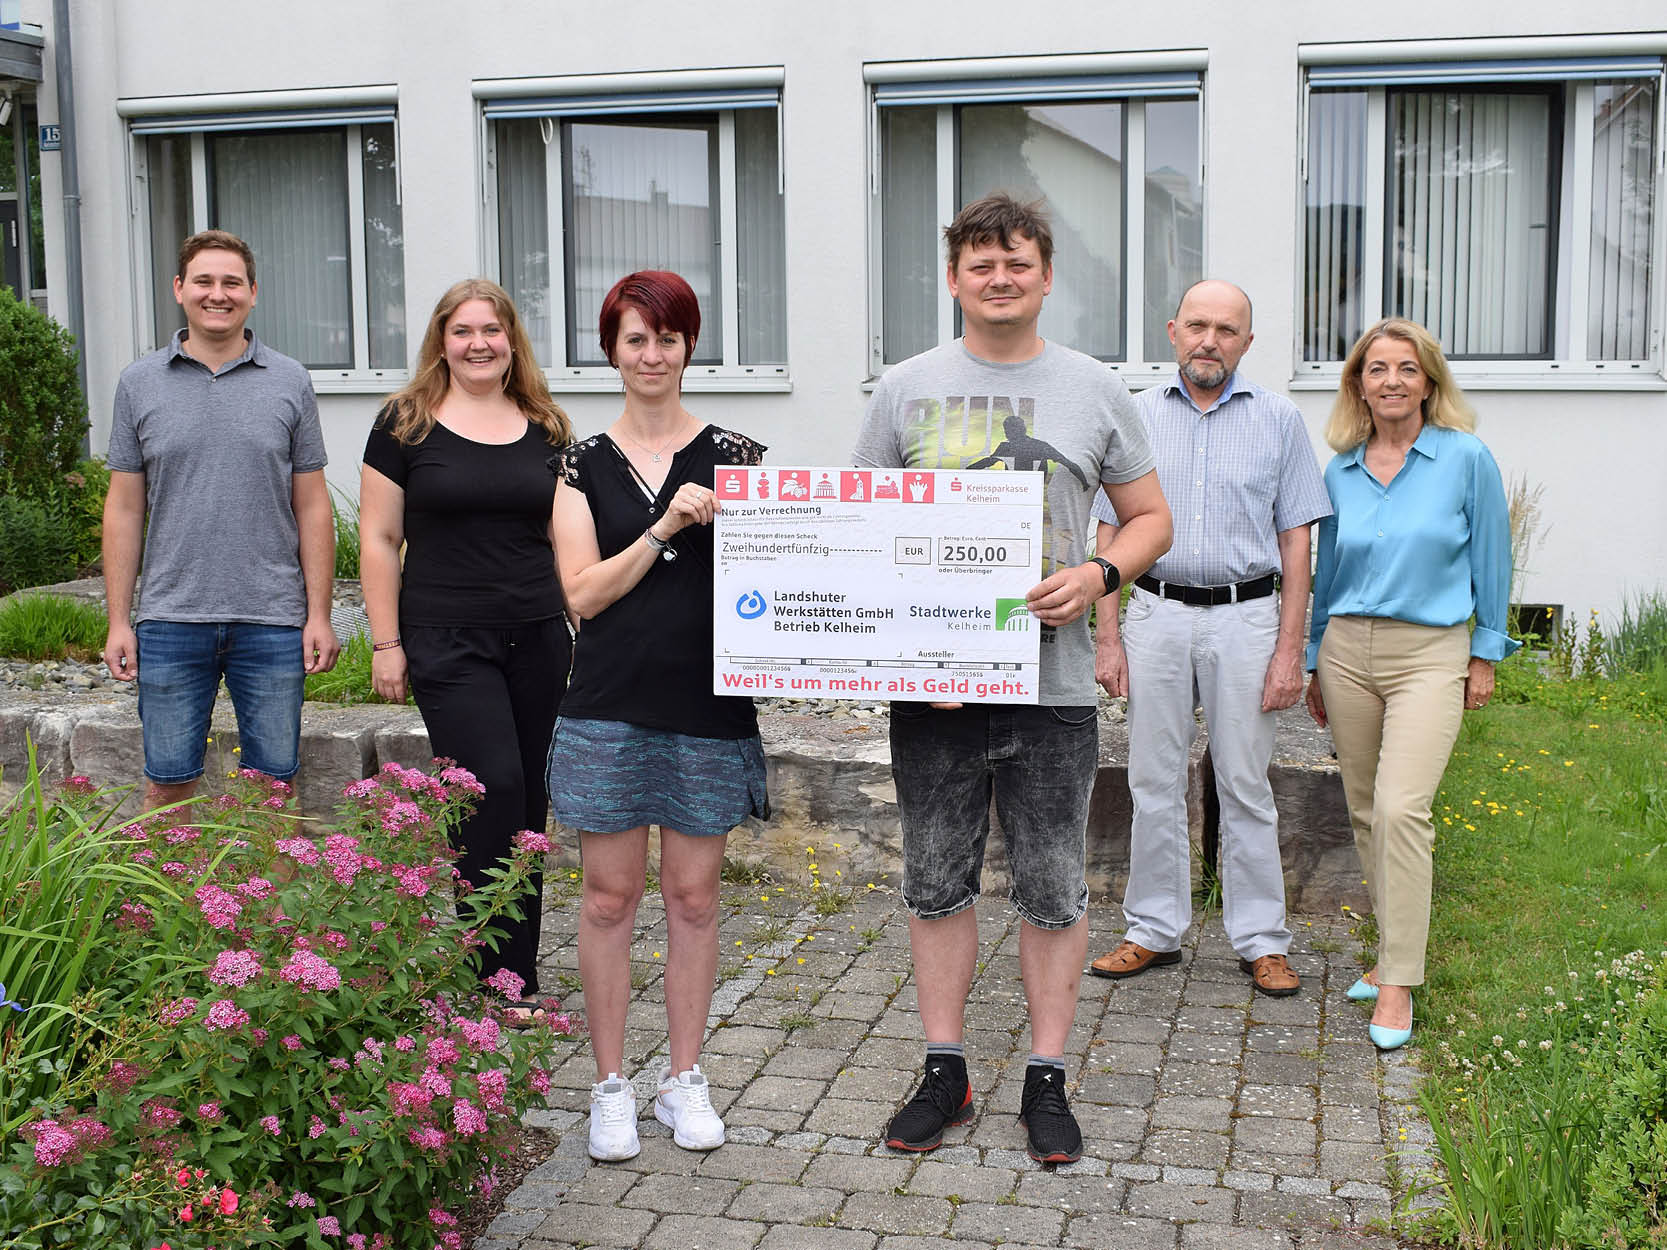 Soziale Verantwortung – Sponsoring bei den Stadtwerken Kelheim